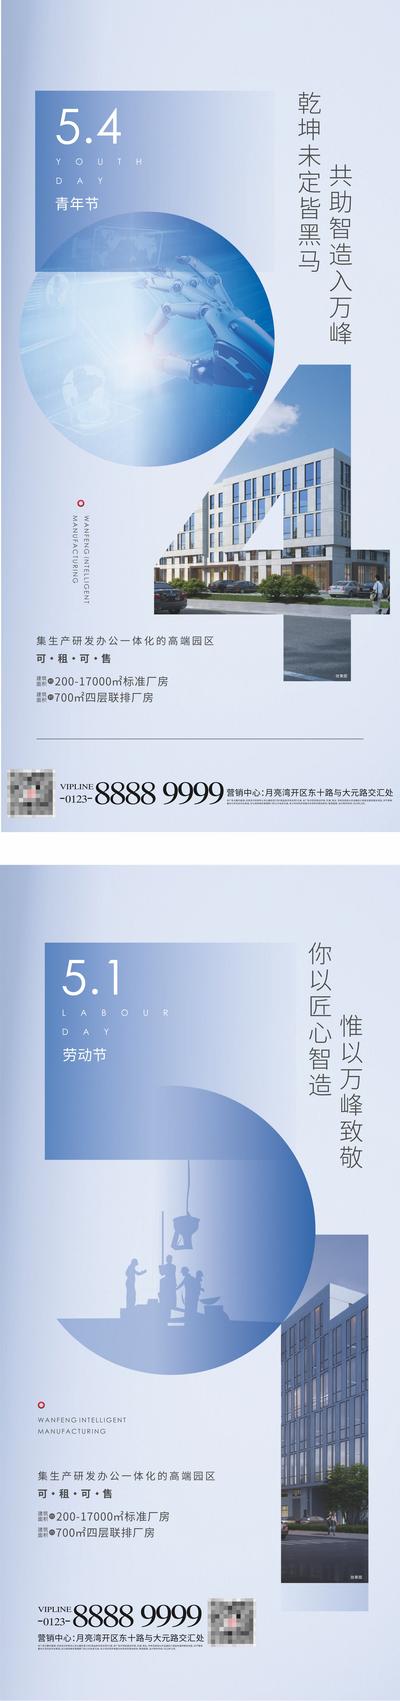 南门网 广告 海报 节气 青年节 五四 54 系列